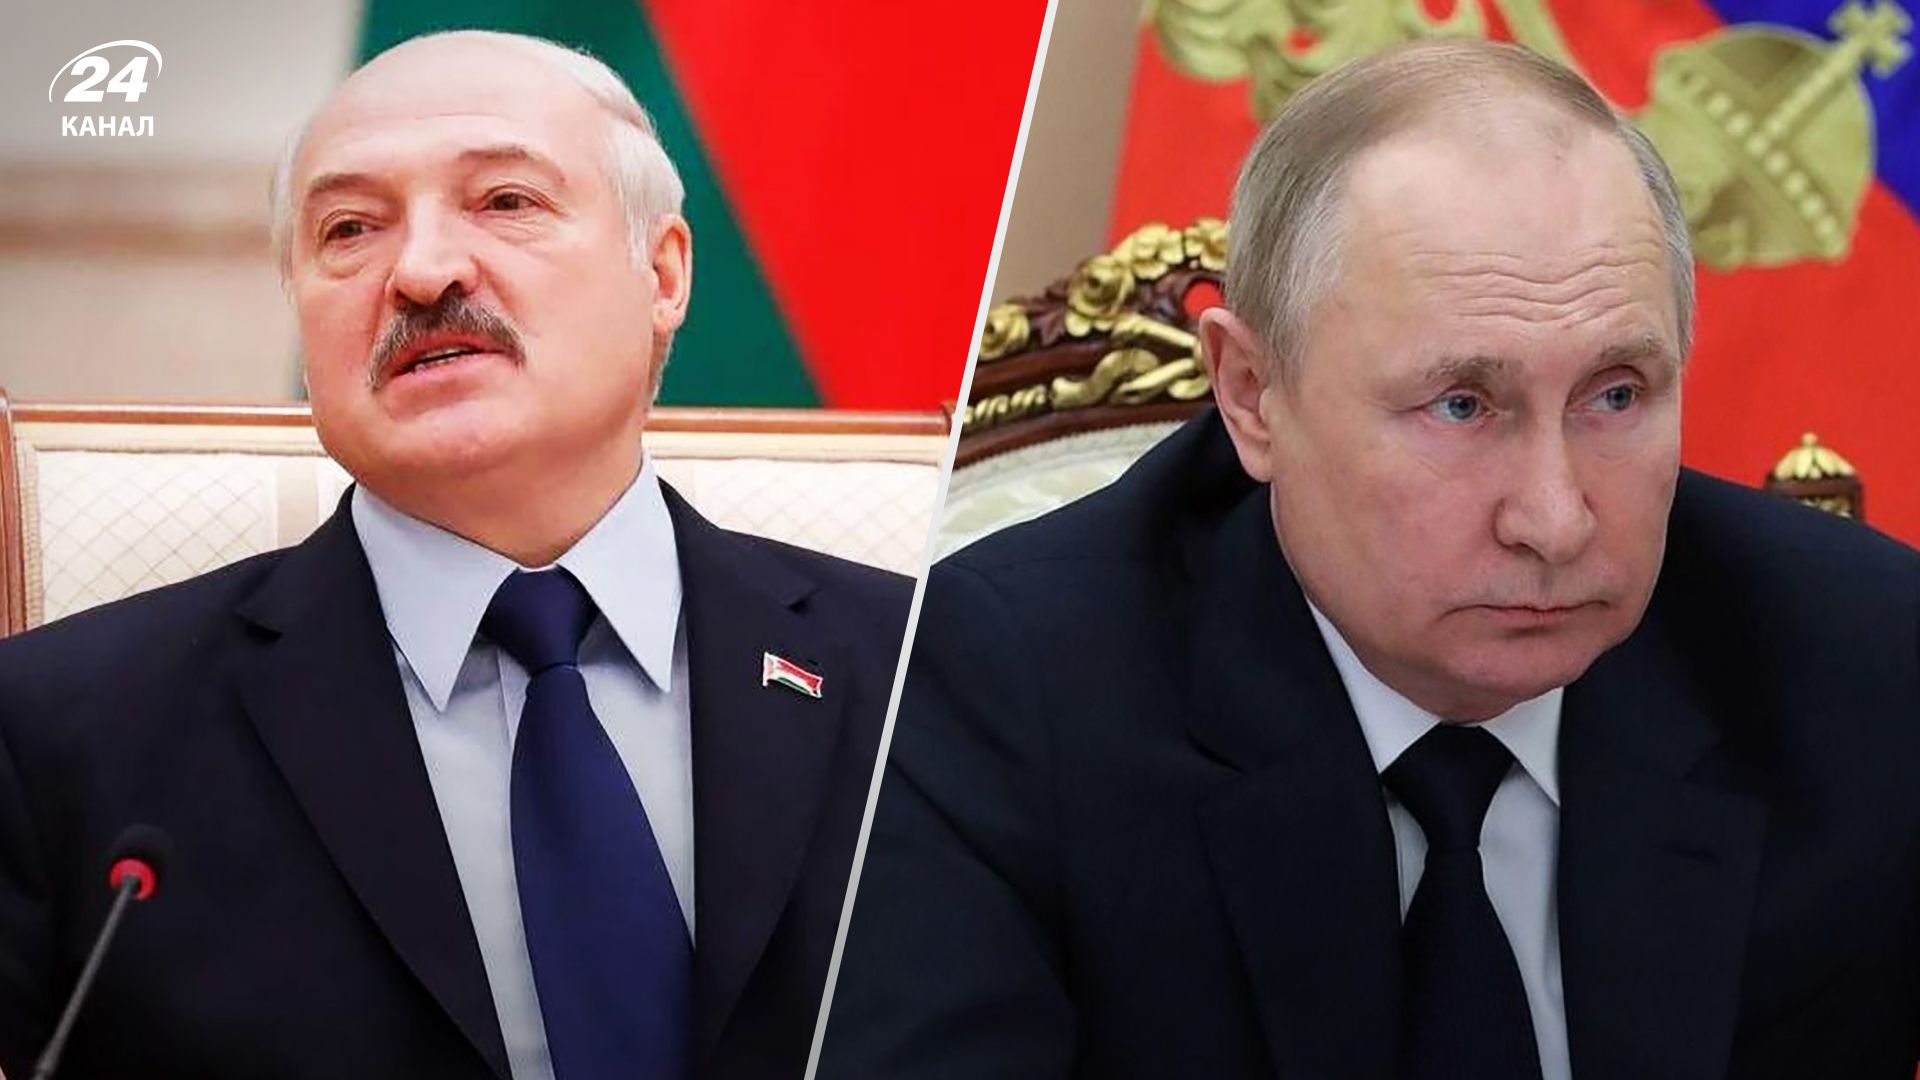 Александр Лукашенко назвал себя и Владимира Путина отходящими политиками